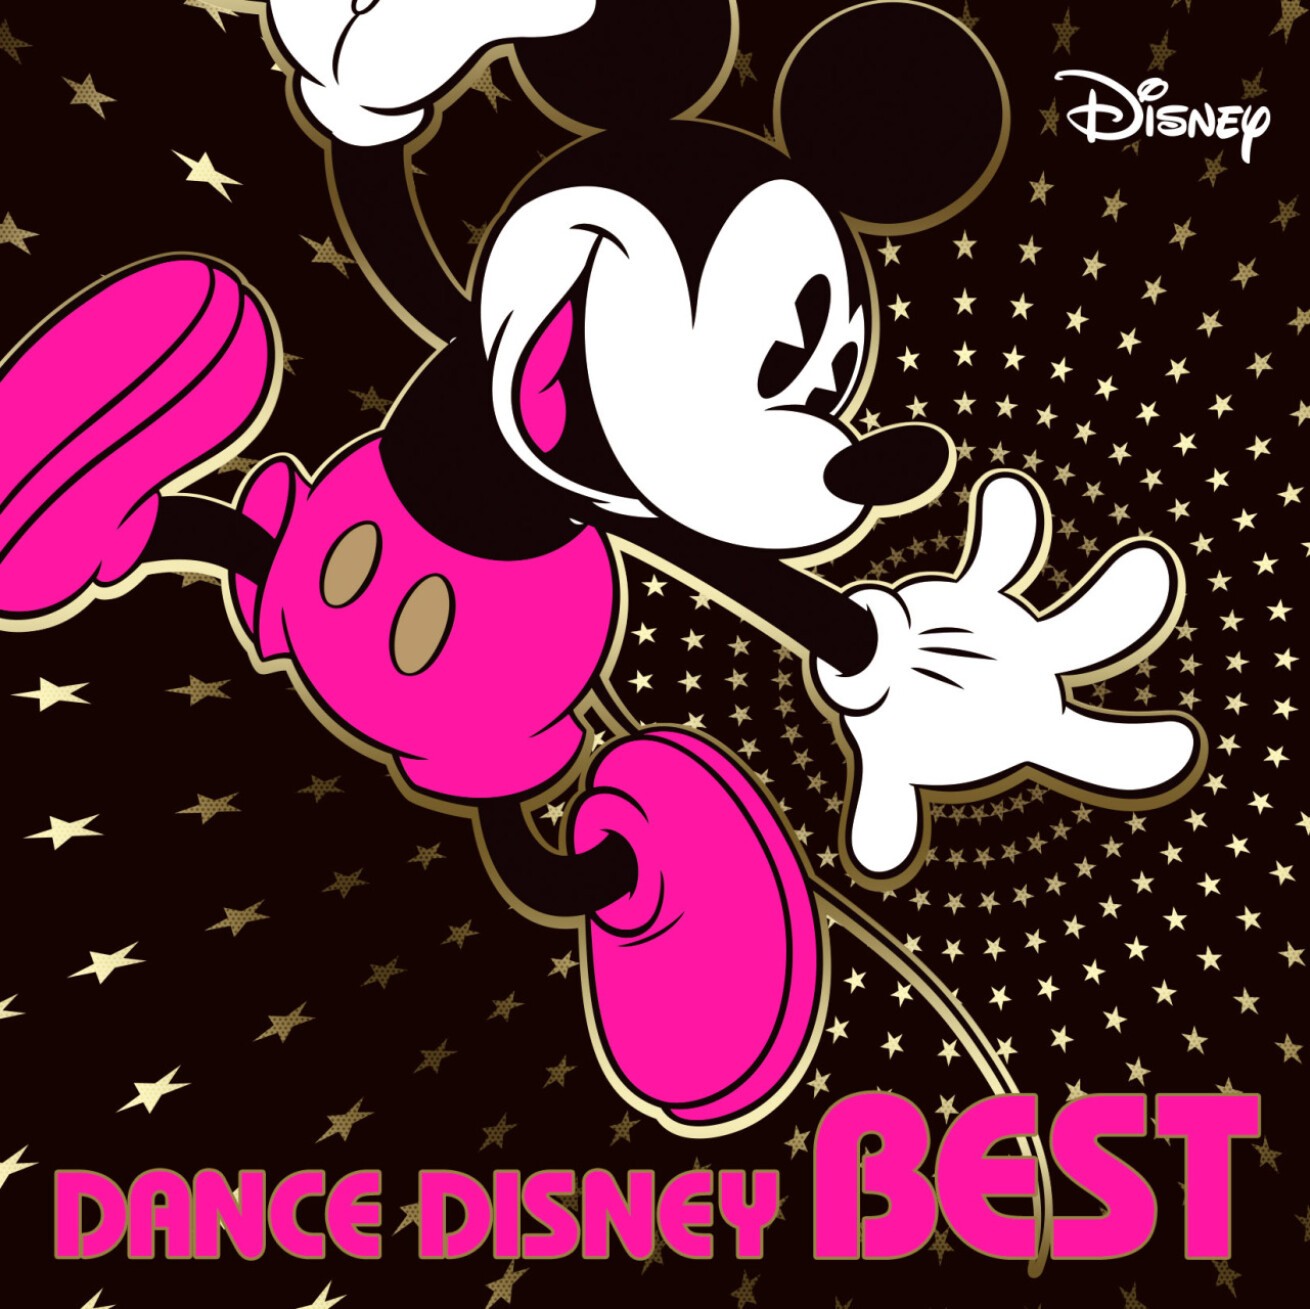 ディズニーとダンス ミュージック 究極のベスト盤 Dance Disney Best が8月に登場 Iflyer